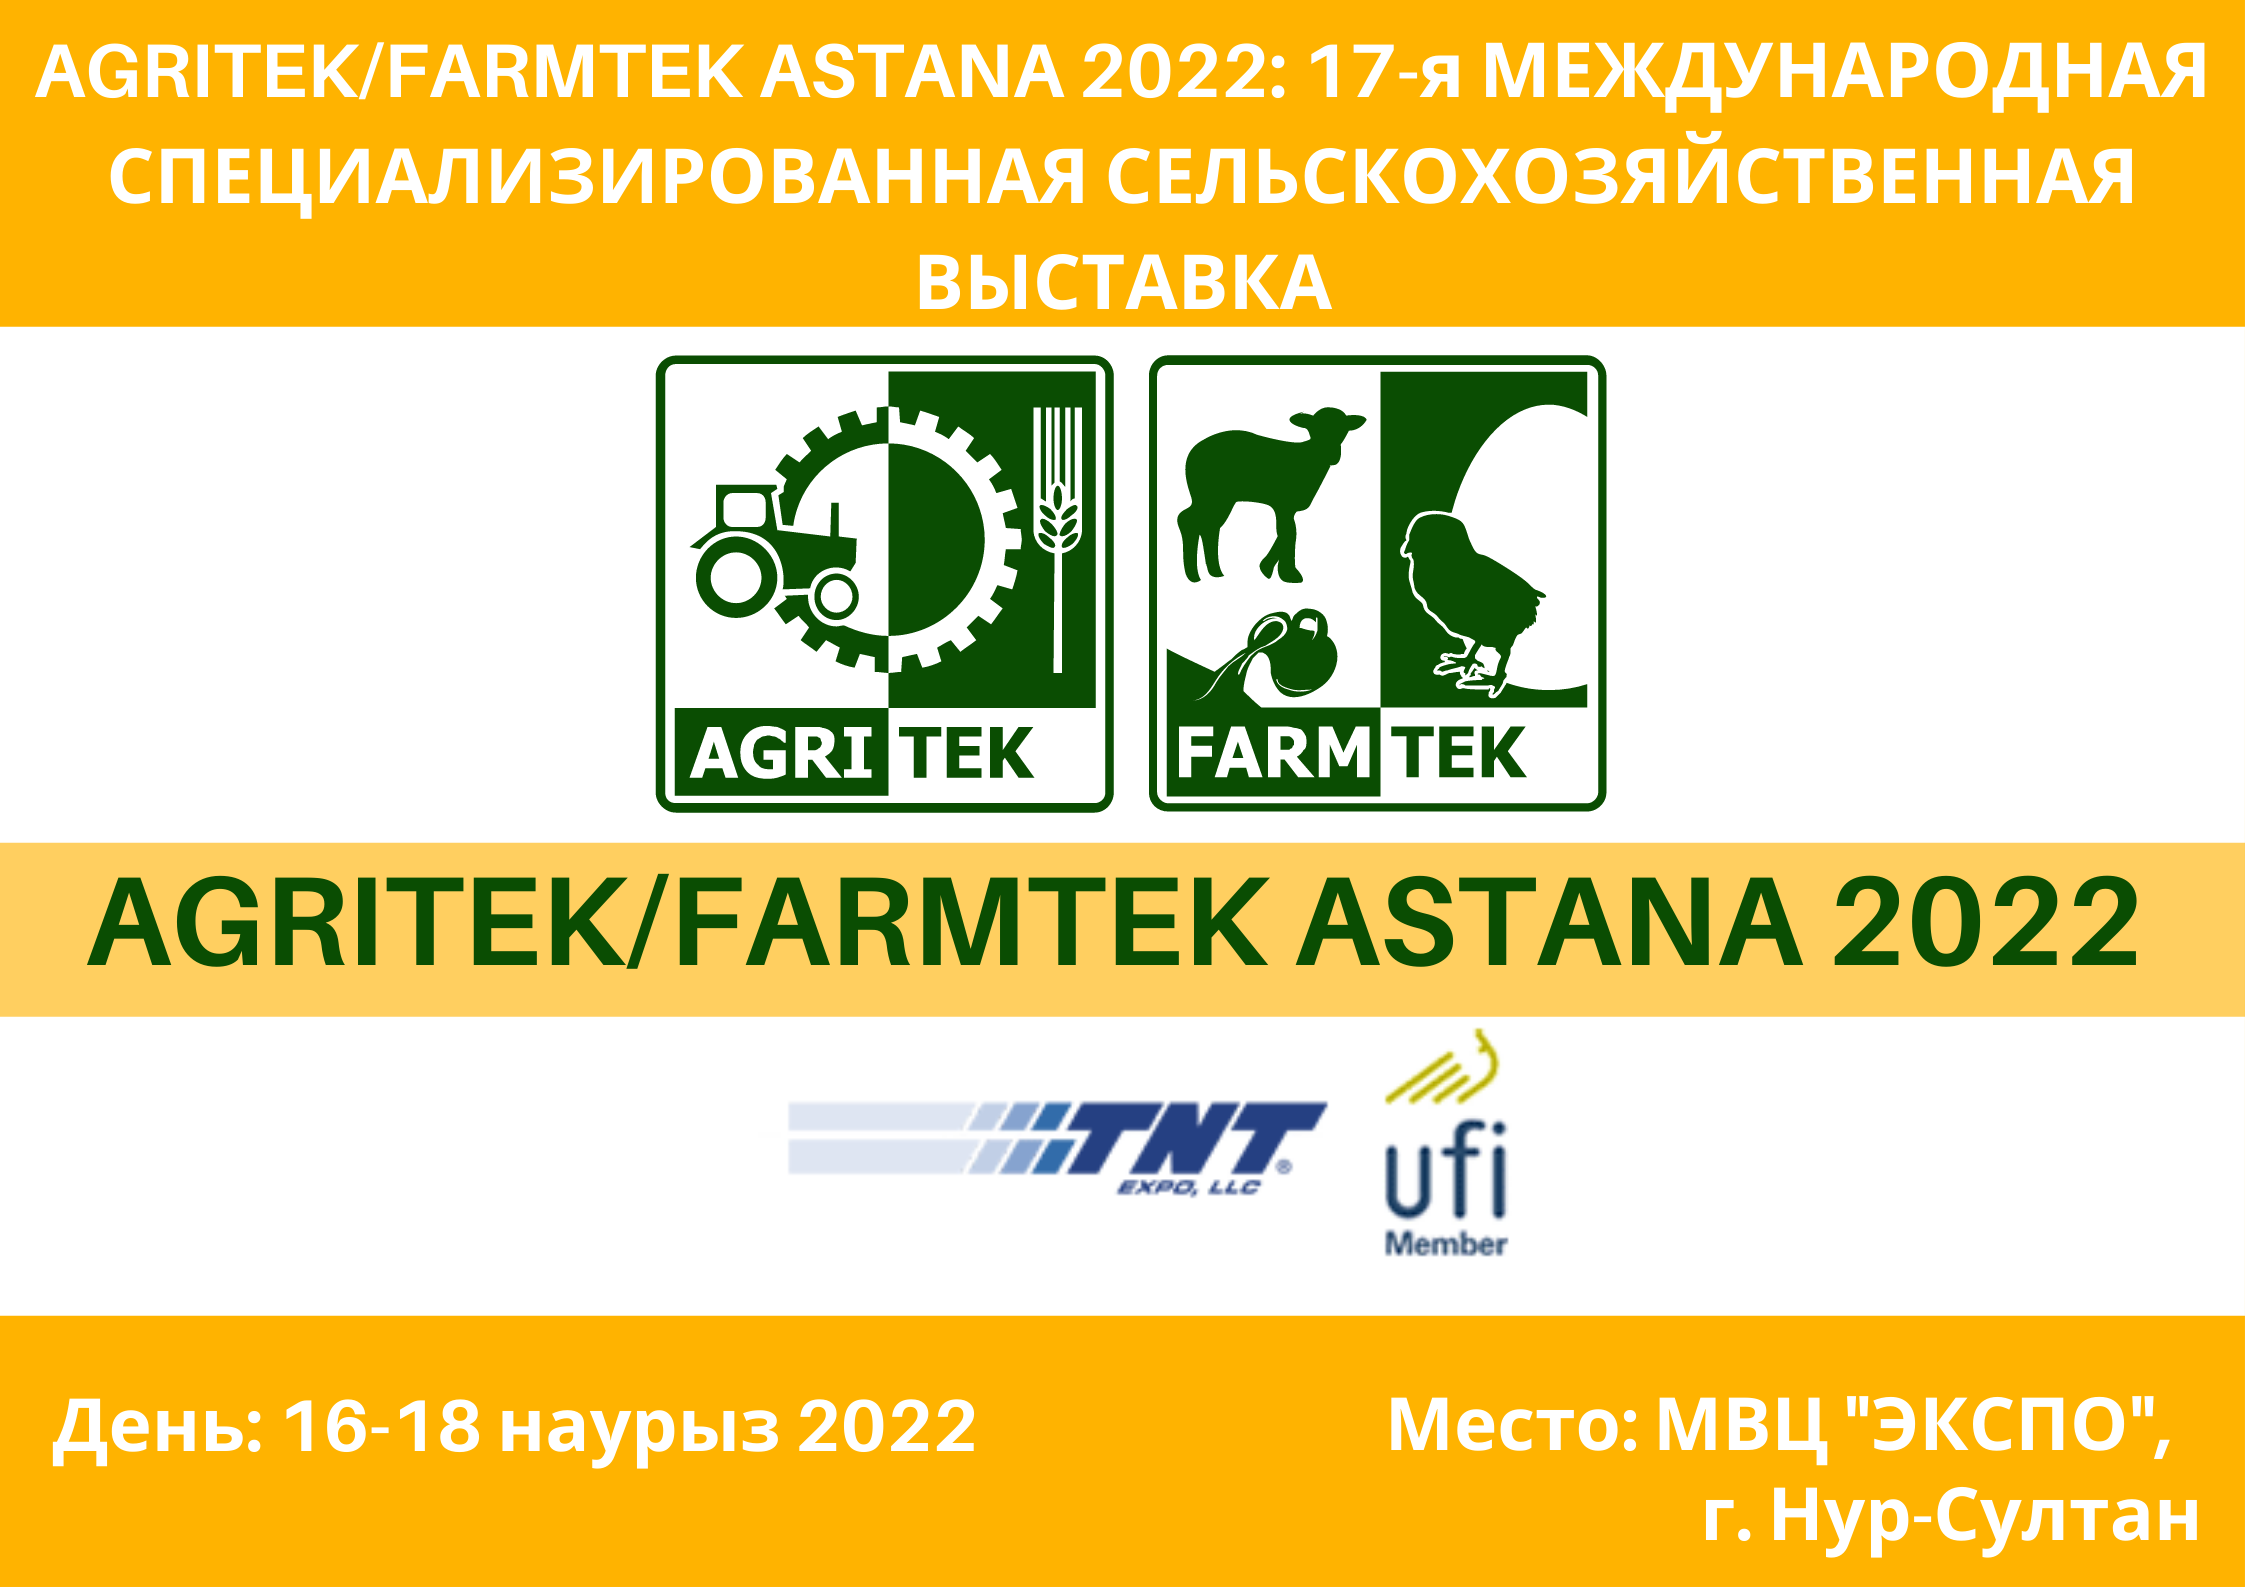 AGRITEK/FARMTEK ASTANA 2022: 17-я МЕЖДУНАРОДНАЯ СПЕЦИАЛИЗИРОВАННАЯ СЕЛЬСКОХОЗЯЙСТВЕННАЯ ВЫСТАВКА